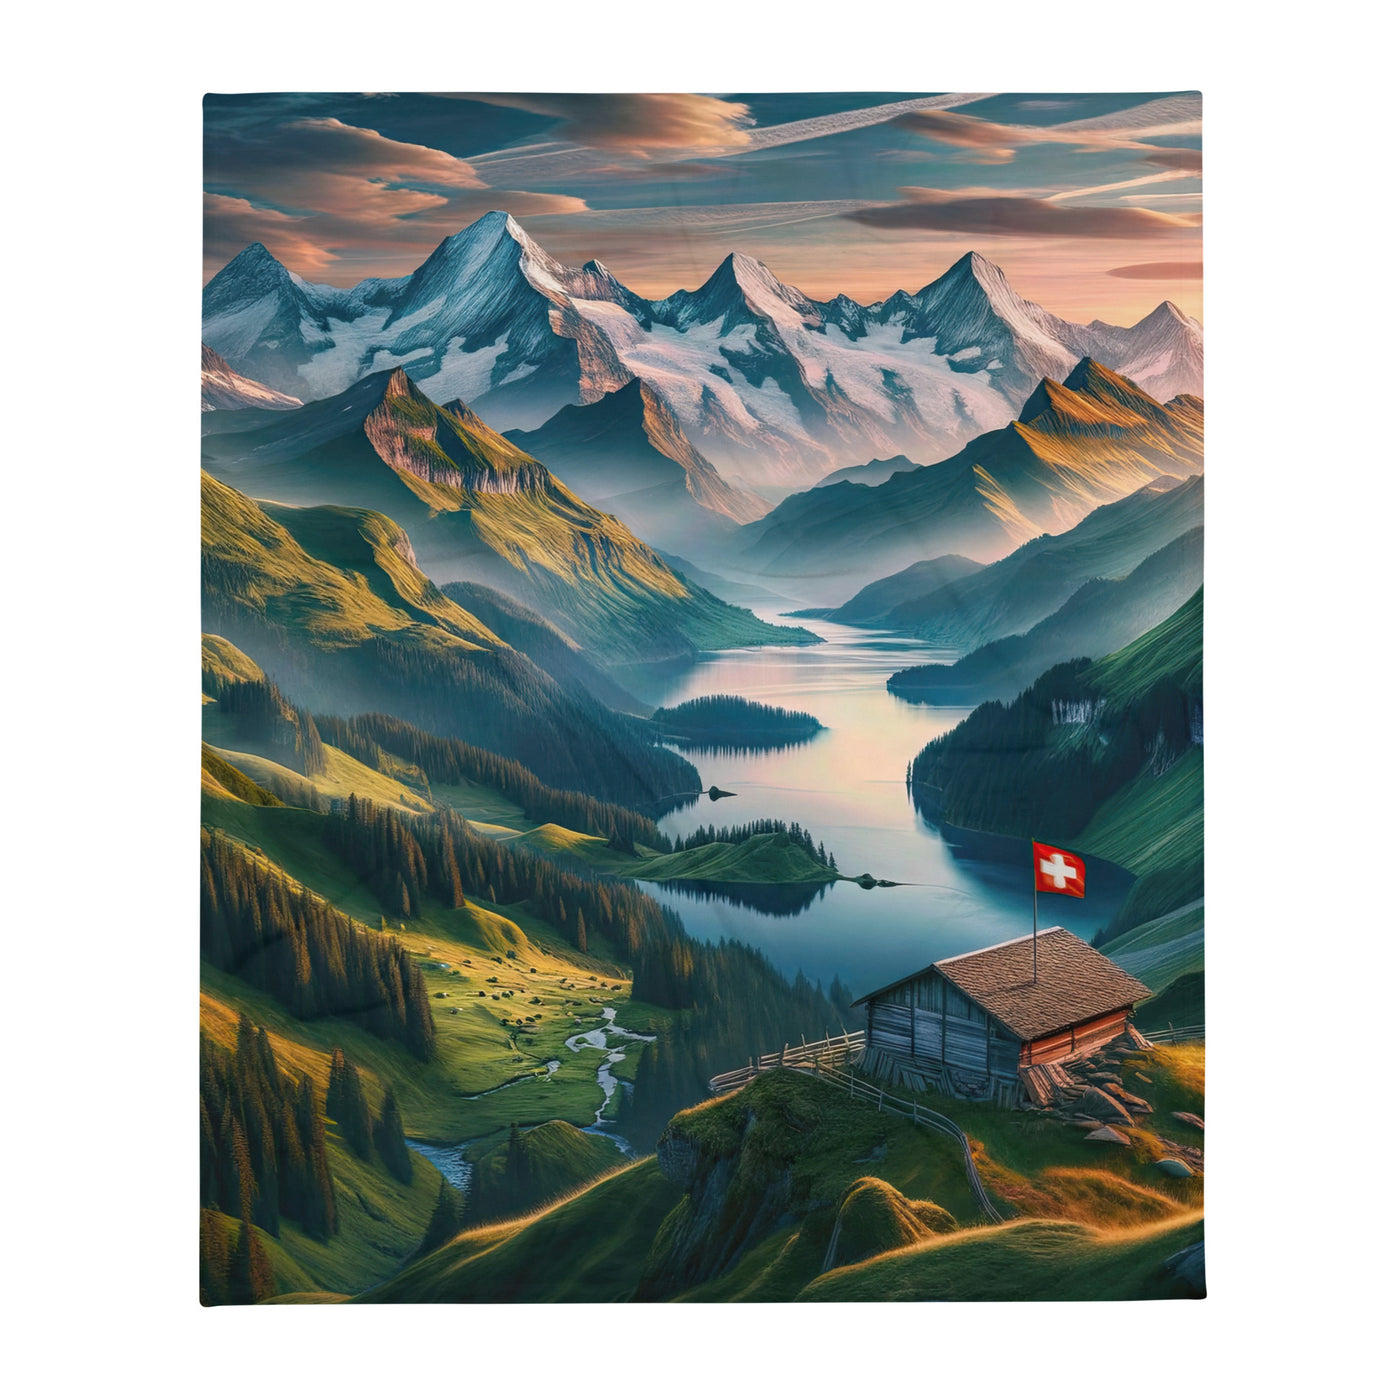 Schweizer Flagge, Alpenidylle: Dämmerlicht, epische Berge und stille Gewässer - Überwurfdecke berge xxx yyy zzz 127 x 152.4 cm